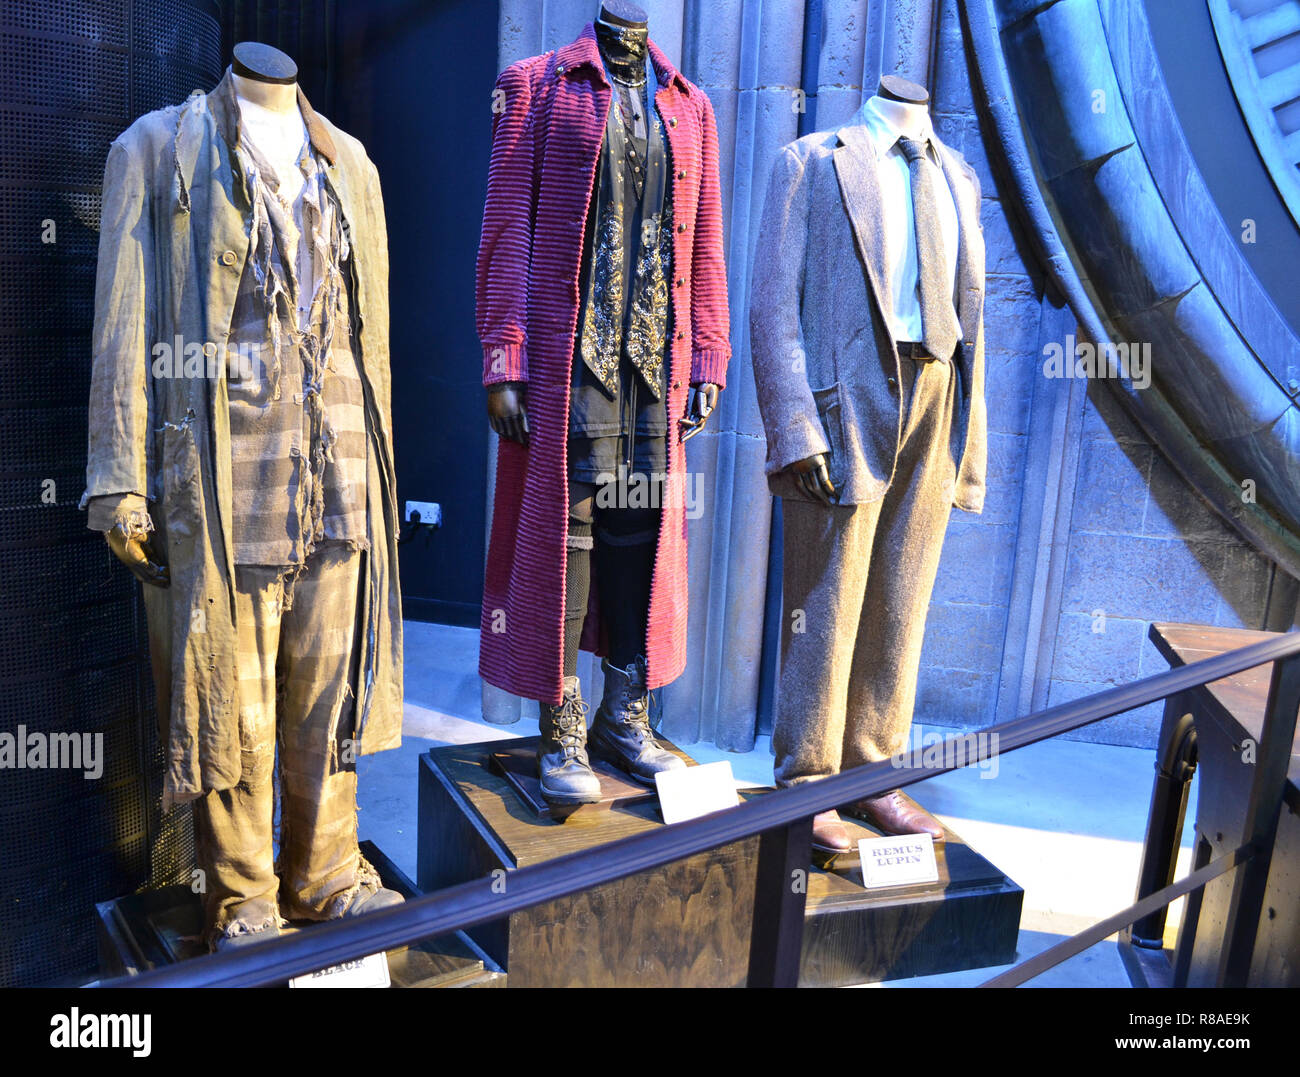 El prisionero de Azkaban trajes en exhibición en el Harry Potter en Leavesden Studios, Londres, Reino Unido. Foto de stock